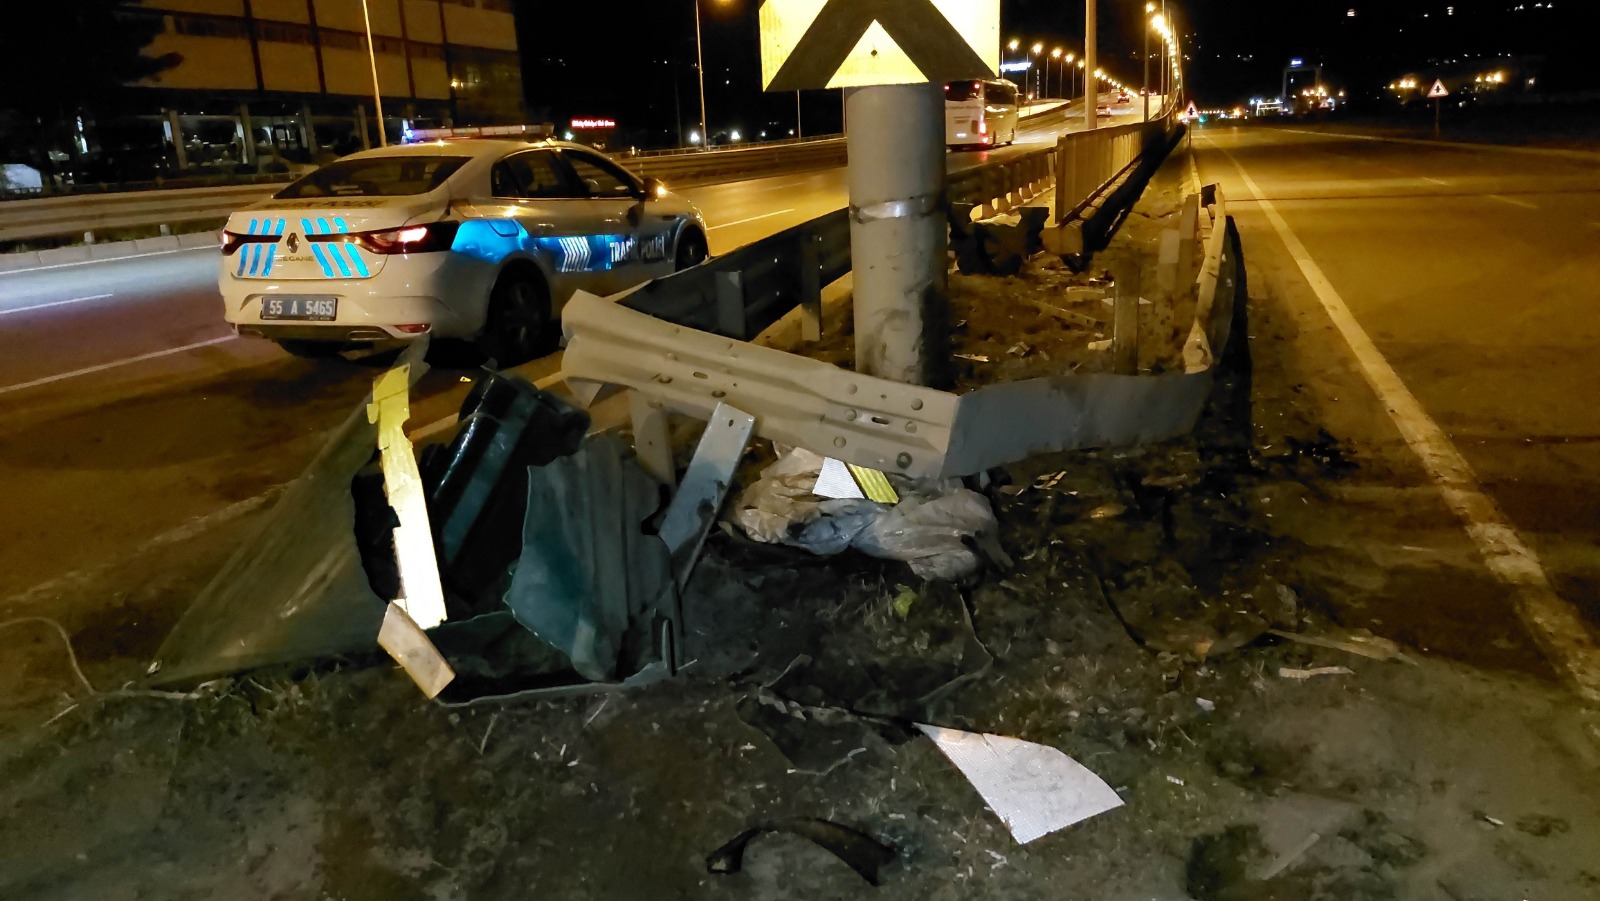  Samsun'un Tekkeköy İlçesi7nde meydana gelen trafik kazasında şoför, mucize bir şekilde hayata tutundu